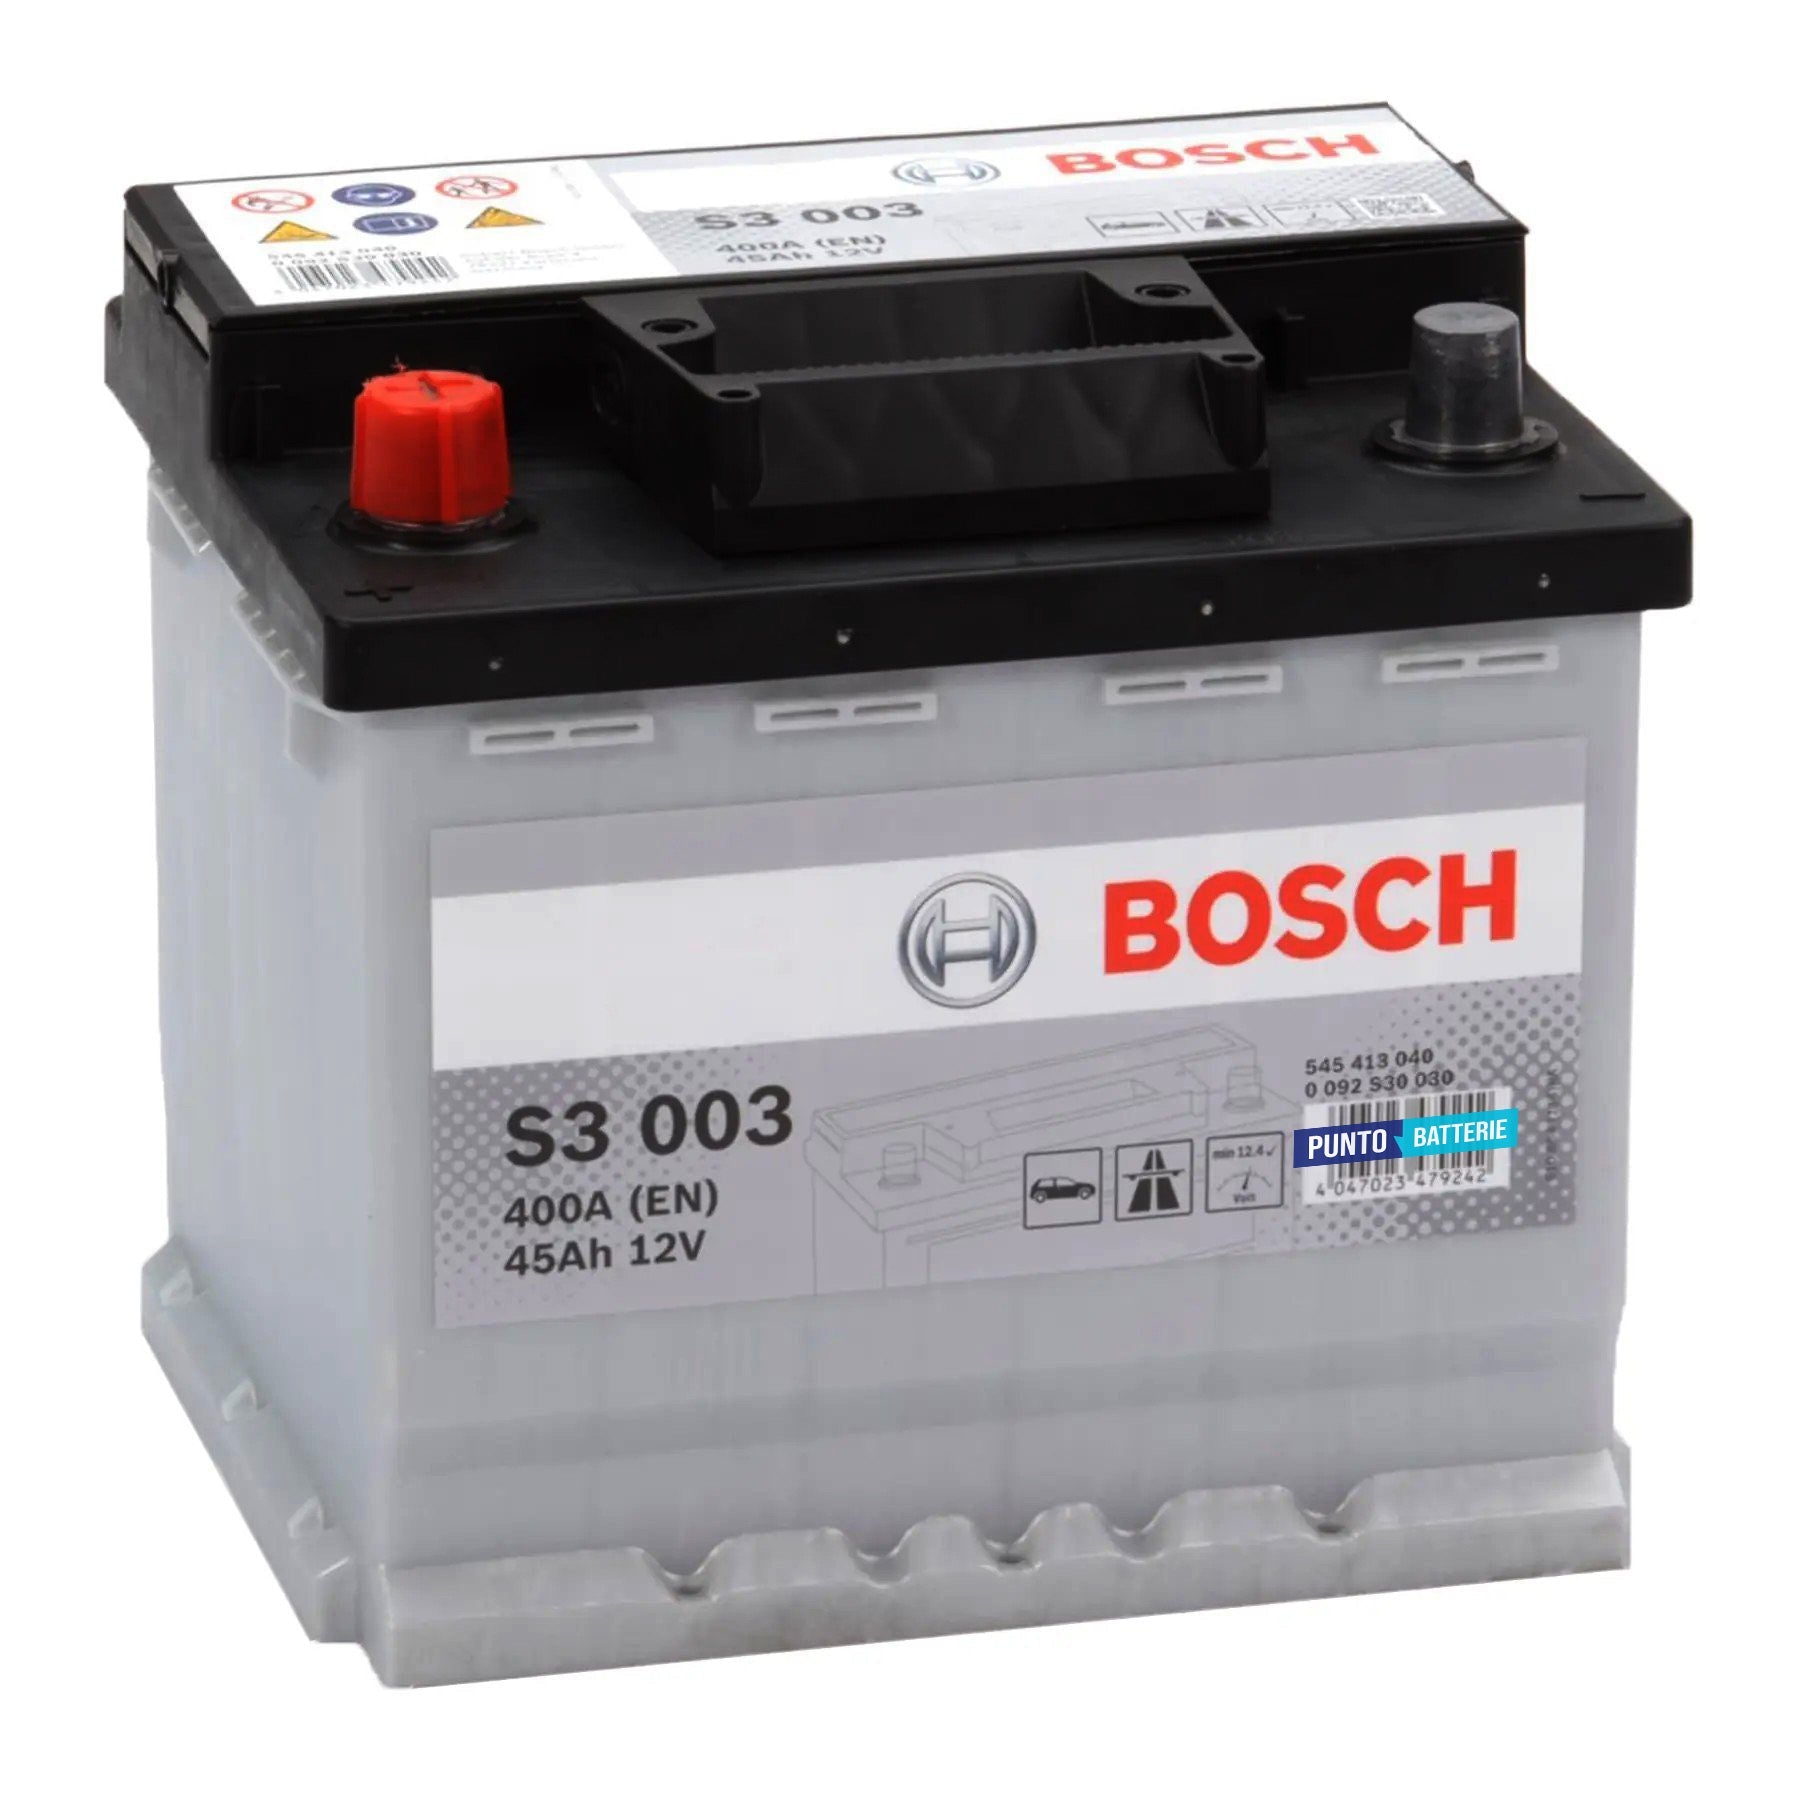 Batteria originale Bosch S3 S3 003, dimensioni 207 x 175 x 190, polo positivo a sinistra, 12 volt, 45 amperora, 400 ampere. Batteria per auto e veicoli leggeri.